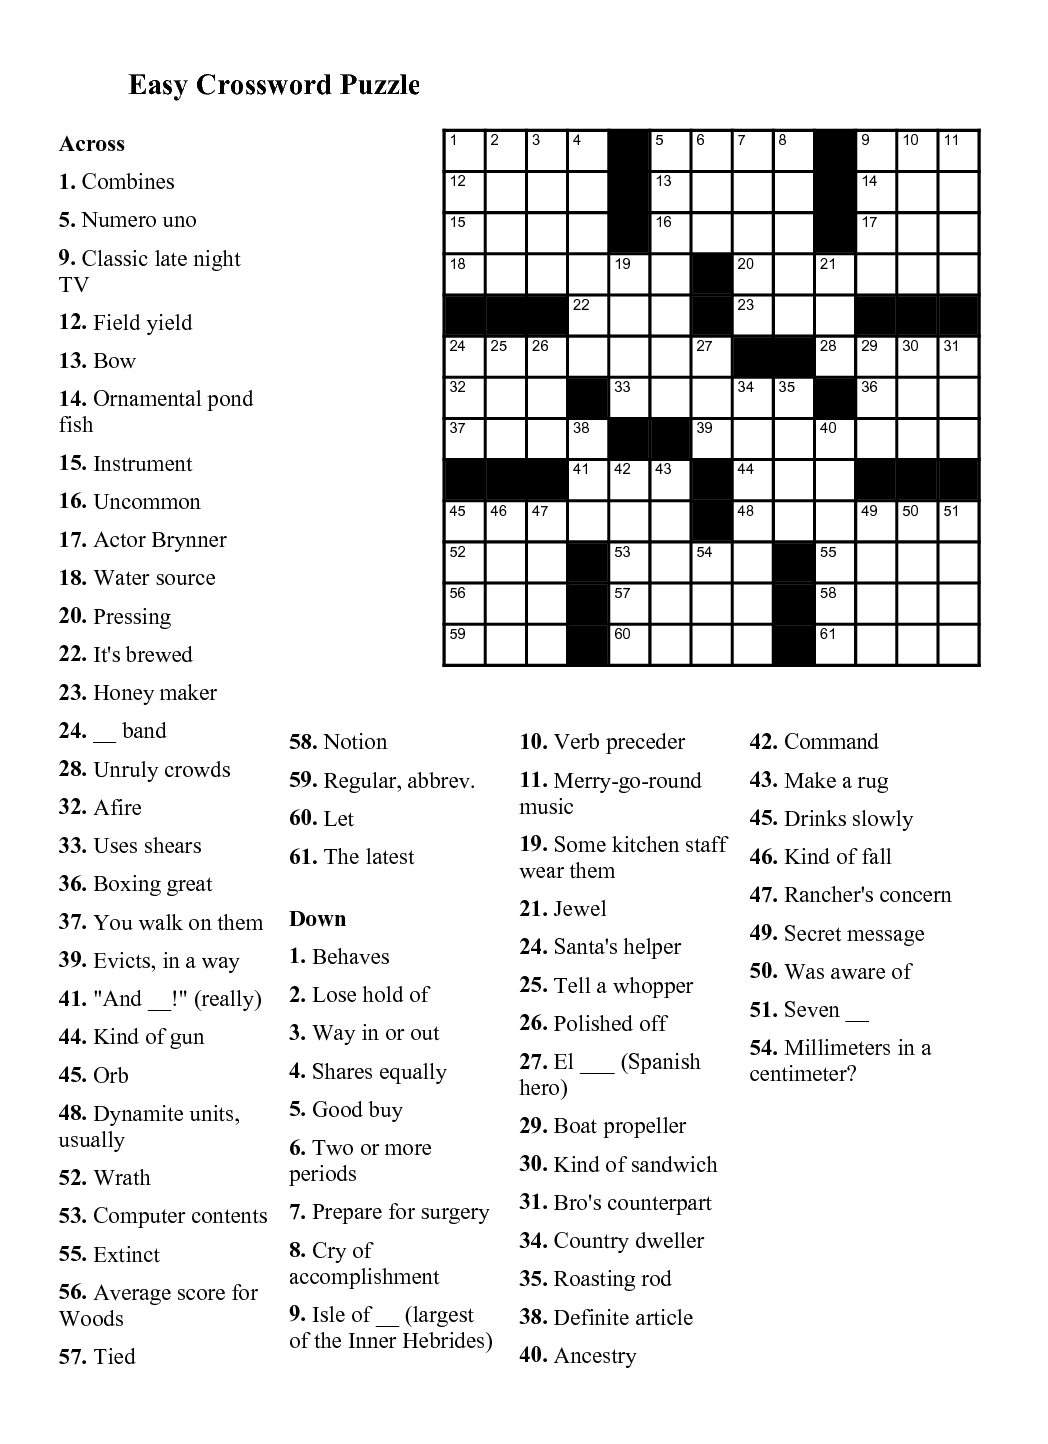 Easy Easy Crossword Puzzles Printable